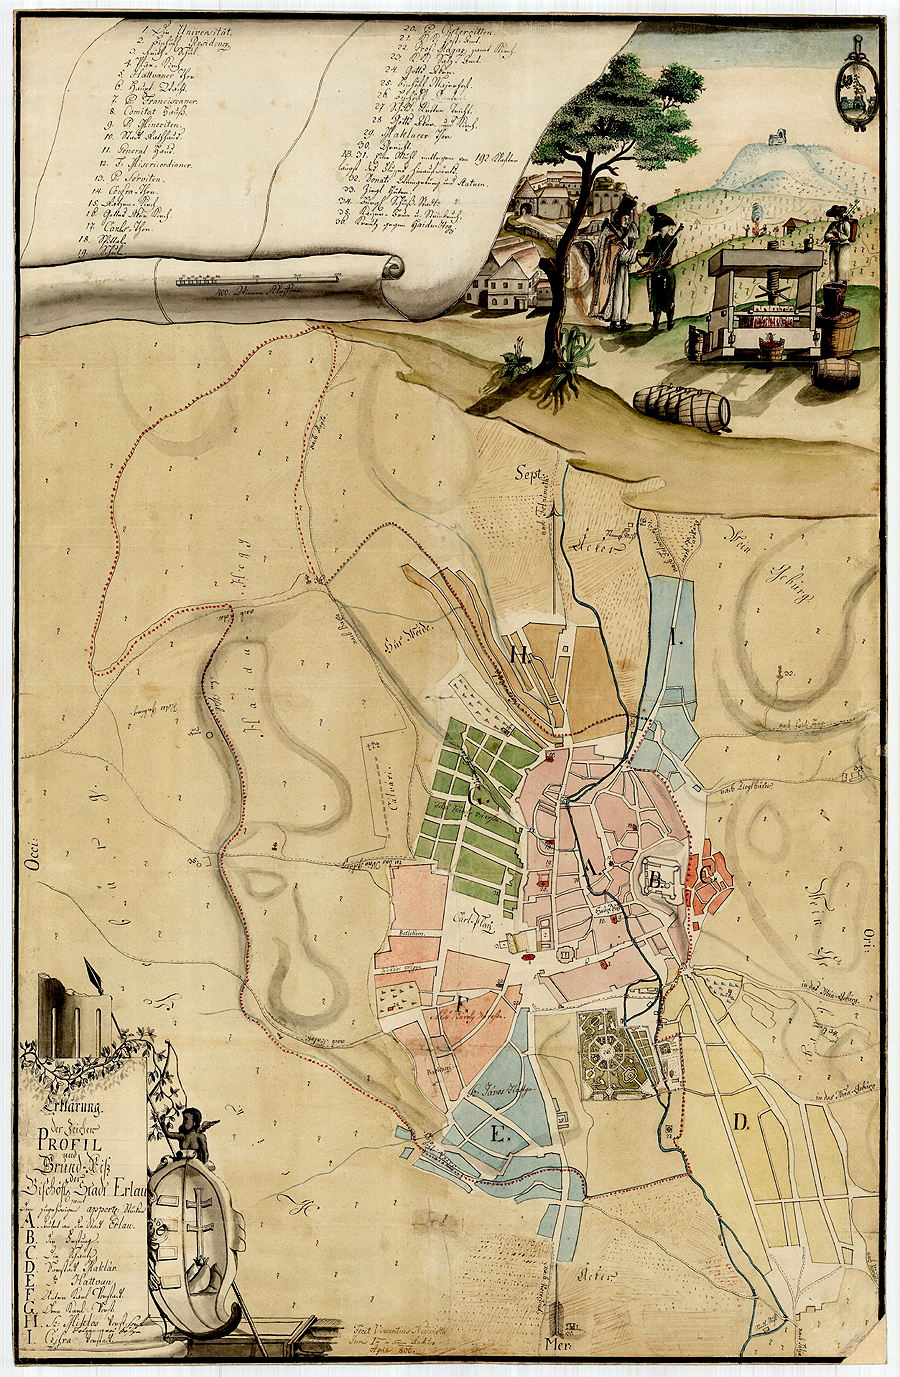 에게르시(市) 필사 지도: 빈센티우스 네우비르쓰 作

null